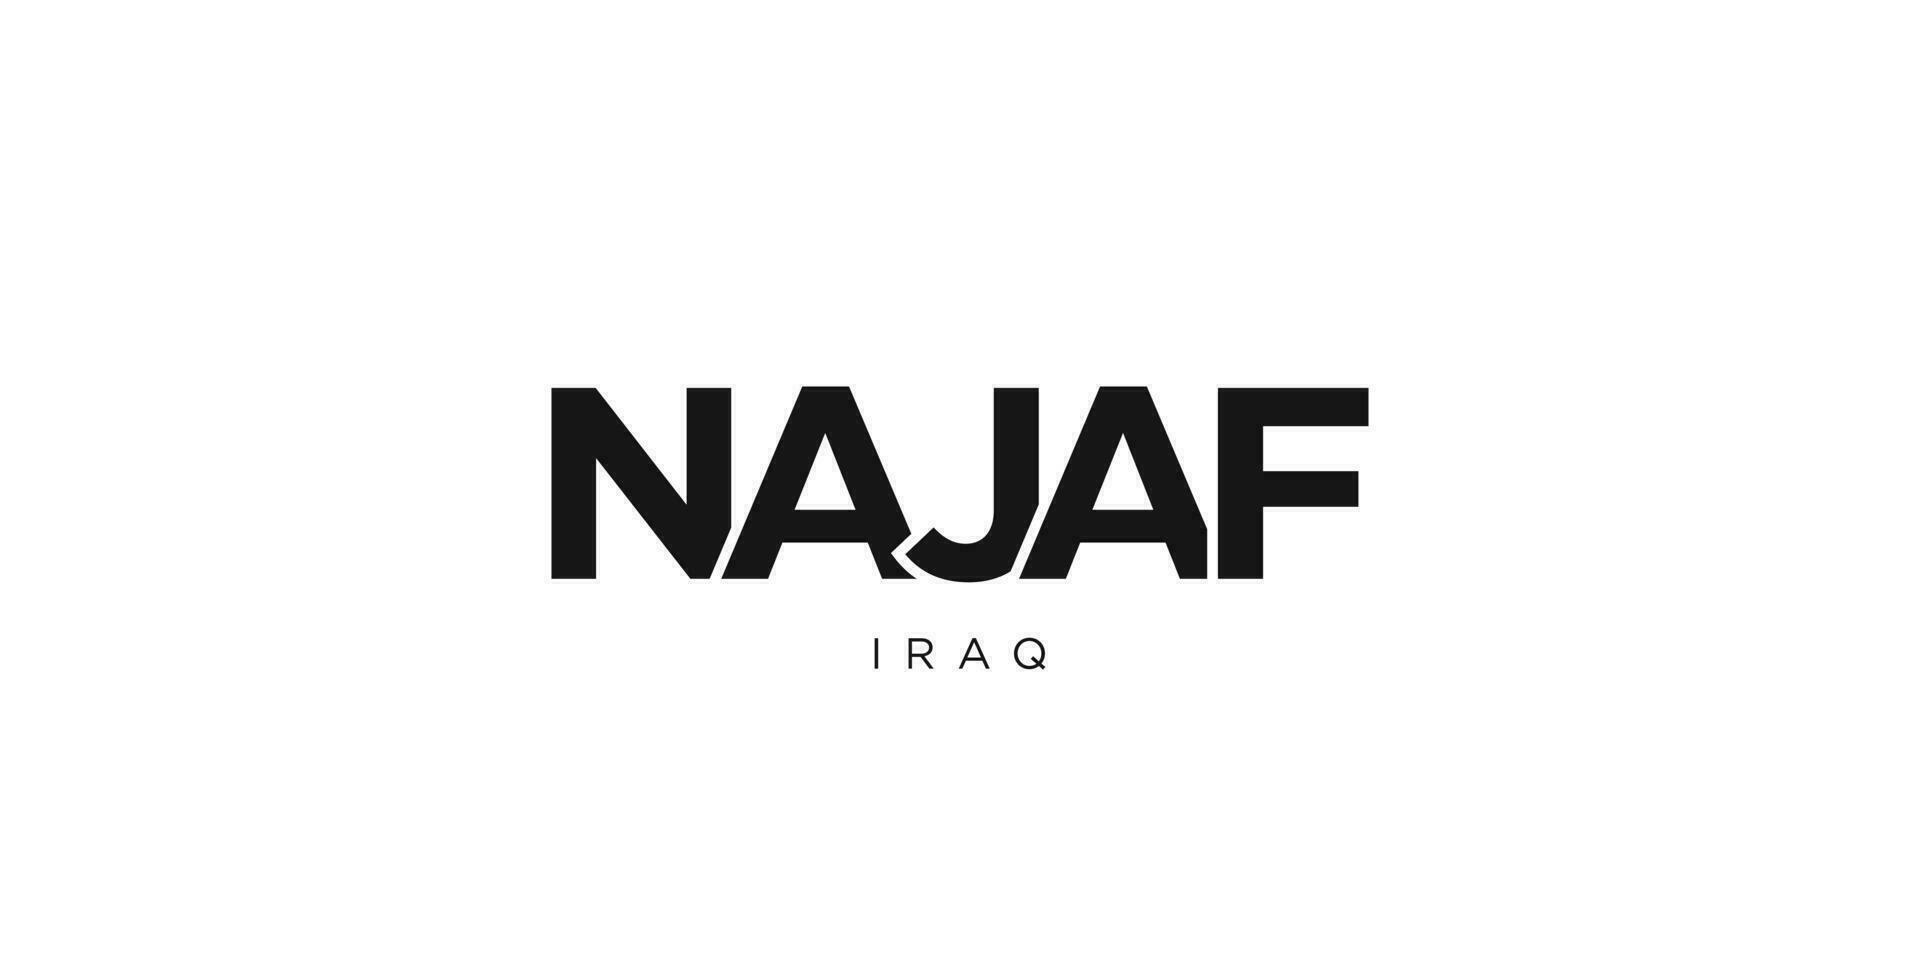 nayaf en el Irak emblema. el diseño caracteristicas un geométrico estilo, vector ilustración con negrita tipografía en un moderno fuente. el gráfico eslogan letras.